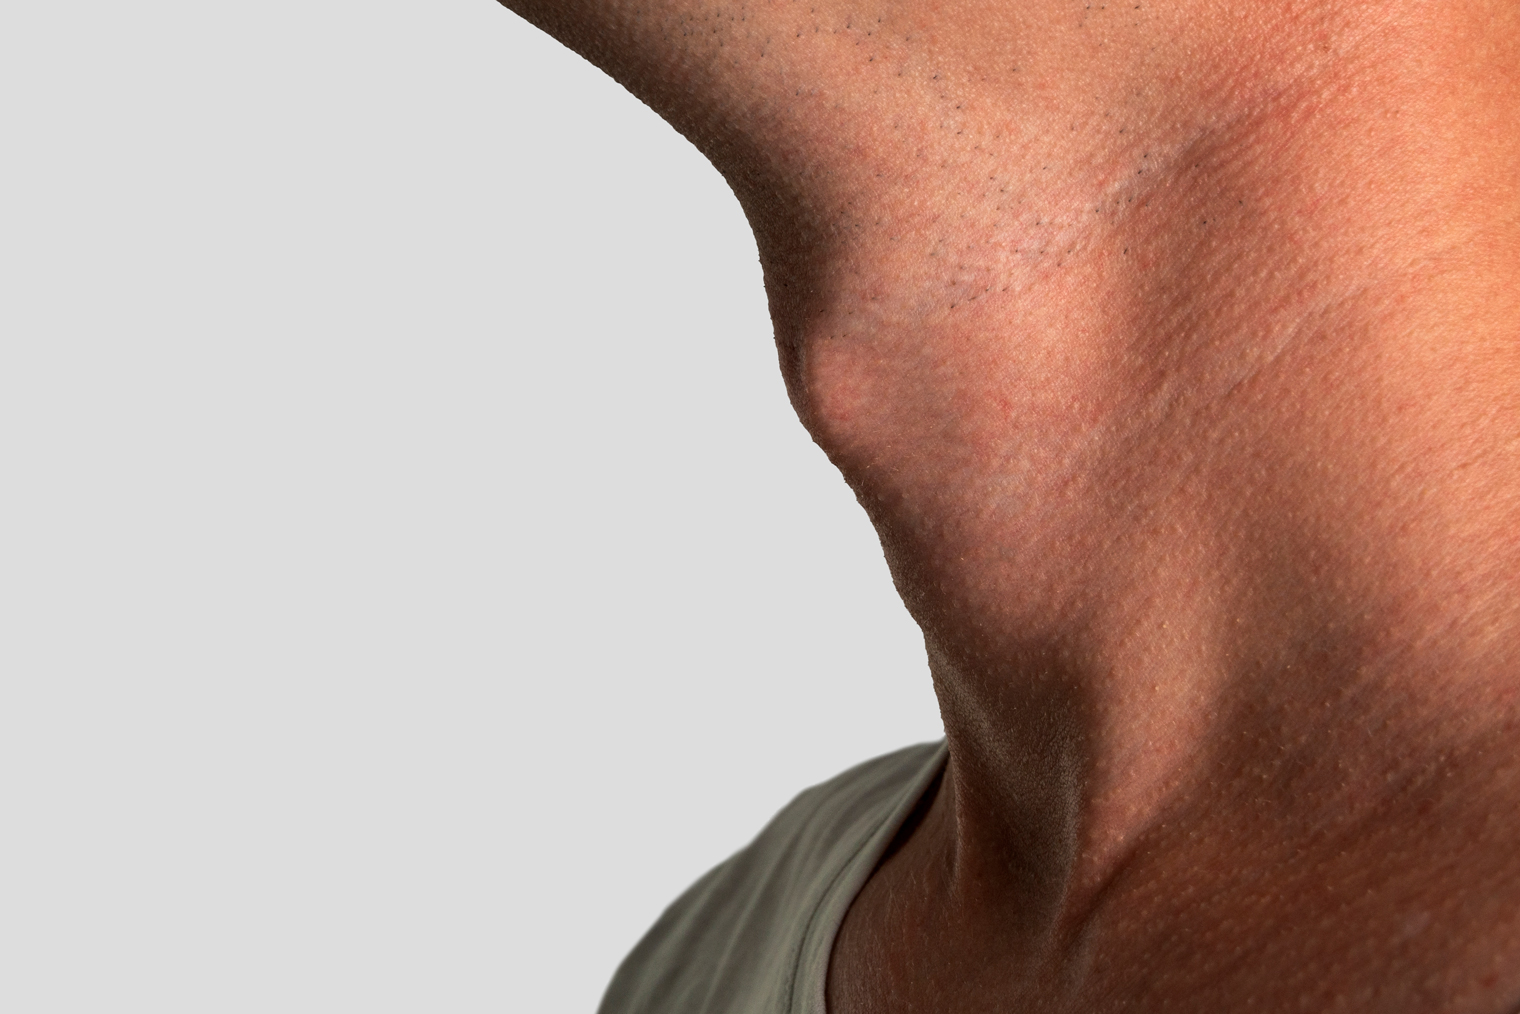 Так выглядит кадык — выступ на передней поверхности шеи, часть гортани. Фотография: daniiD / Shutterstock / FOTODOM